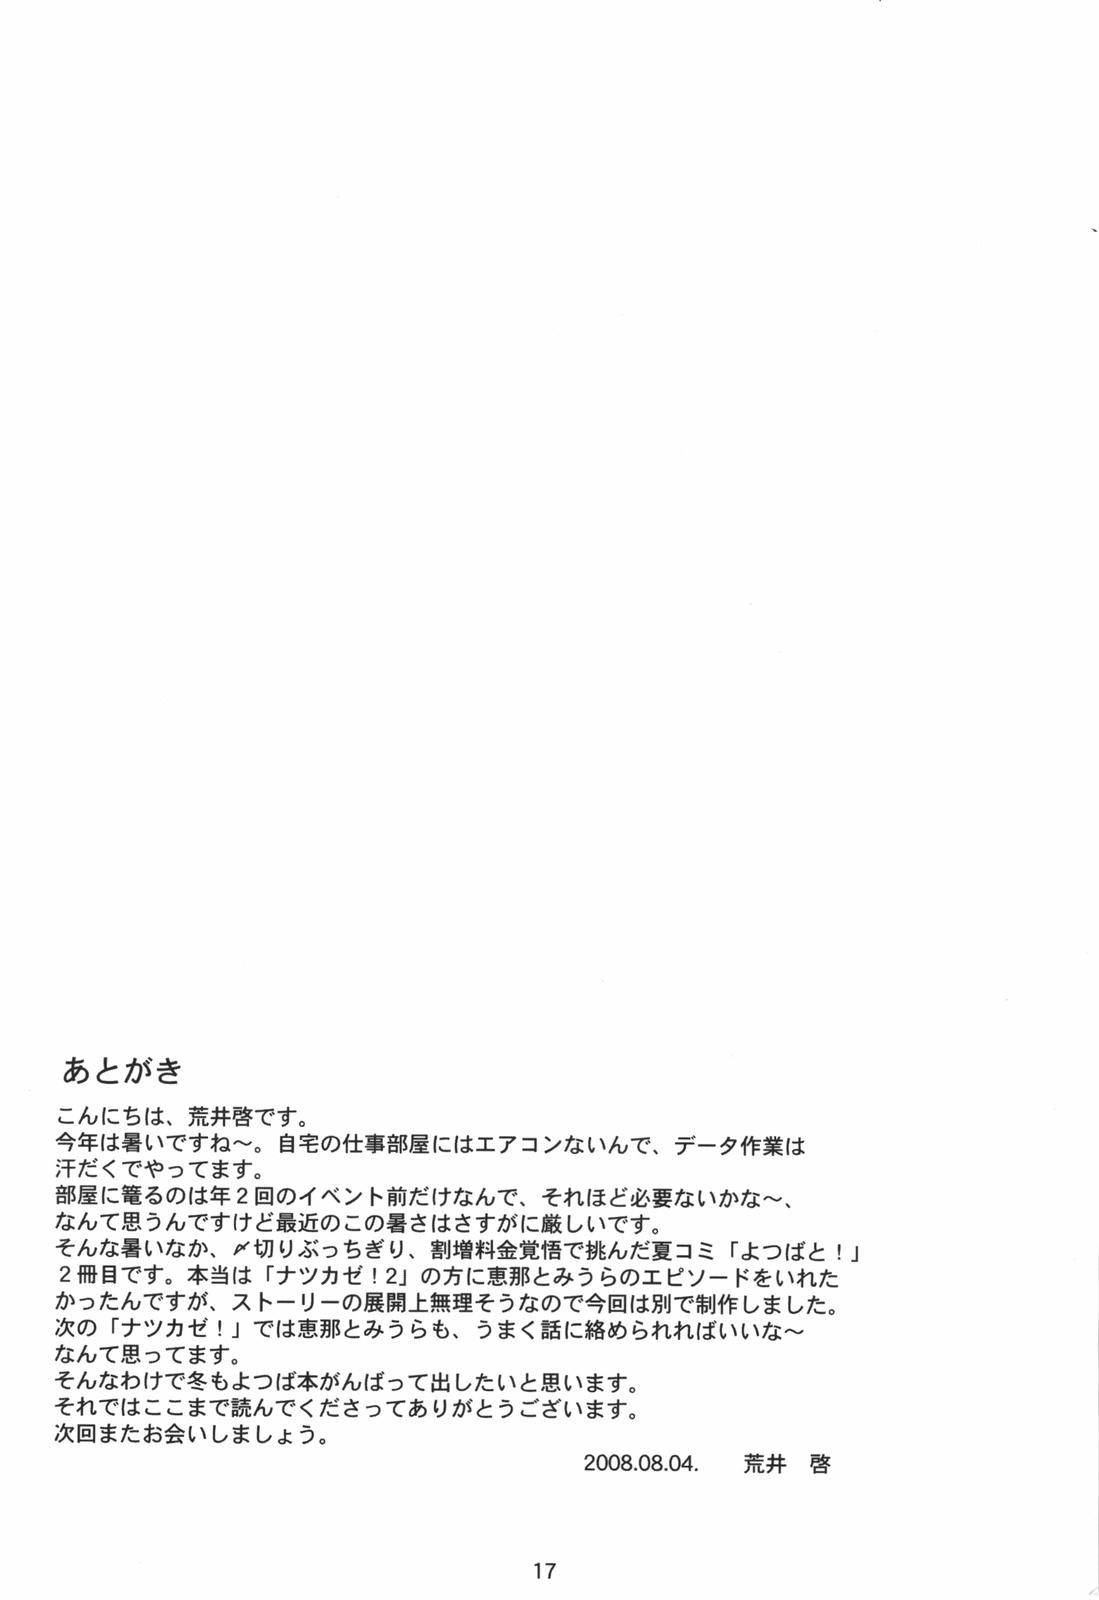 Raw Jiyuukenkyuu | Free Study - Yotsubato Husband - Page 17